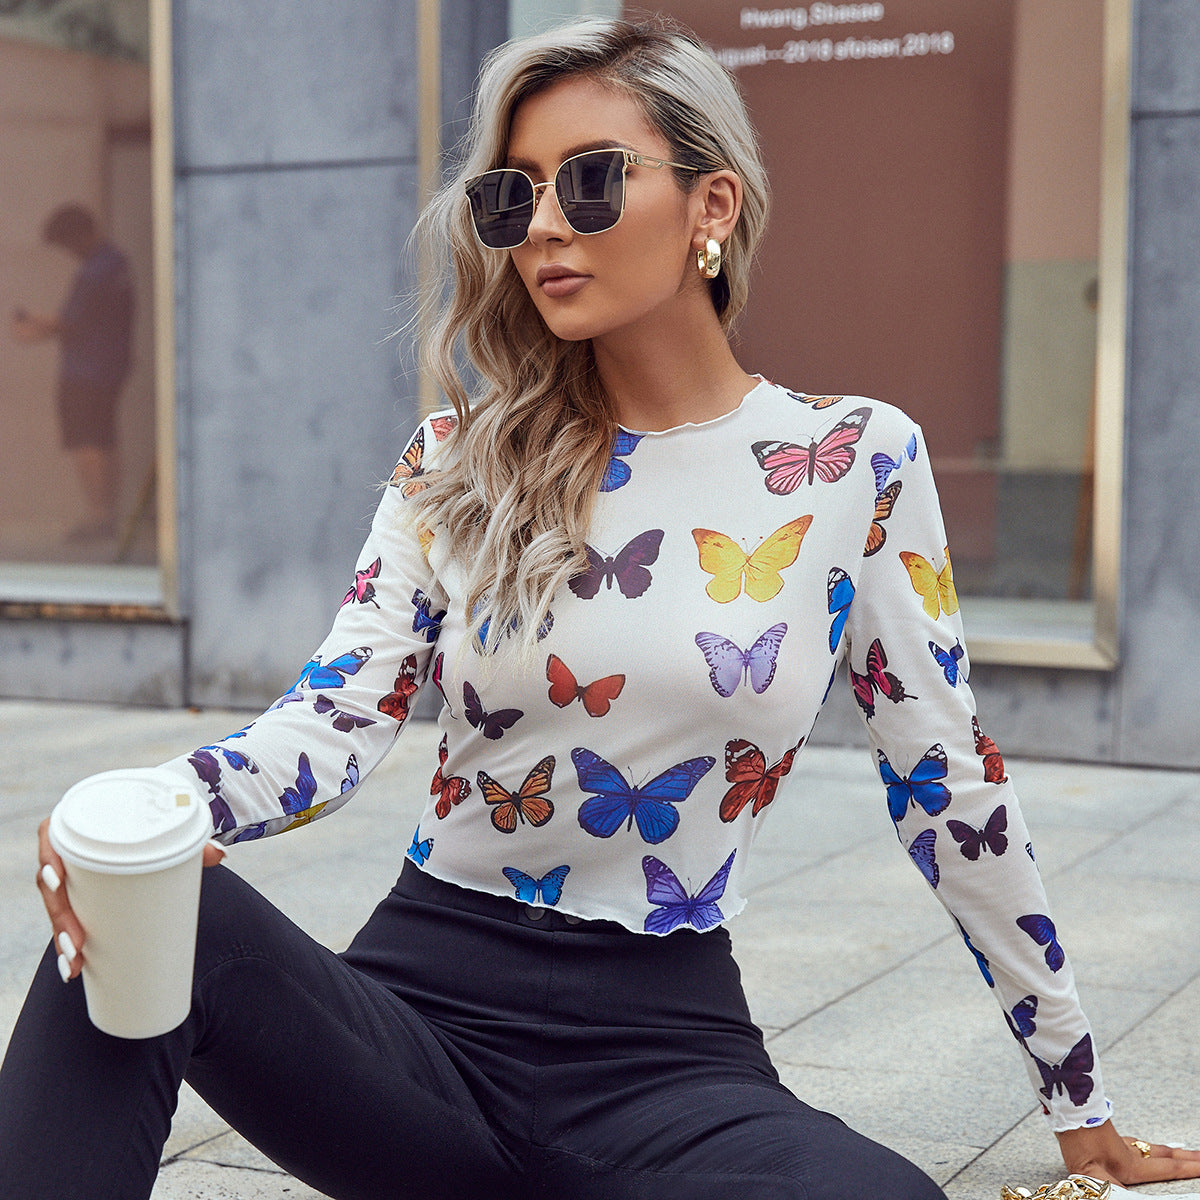 Lauren’s Slim T-Shirt with Butterflies